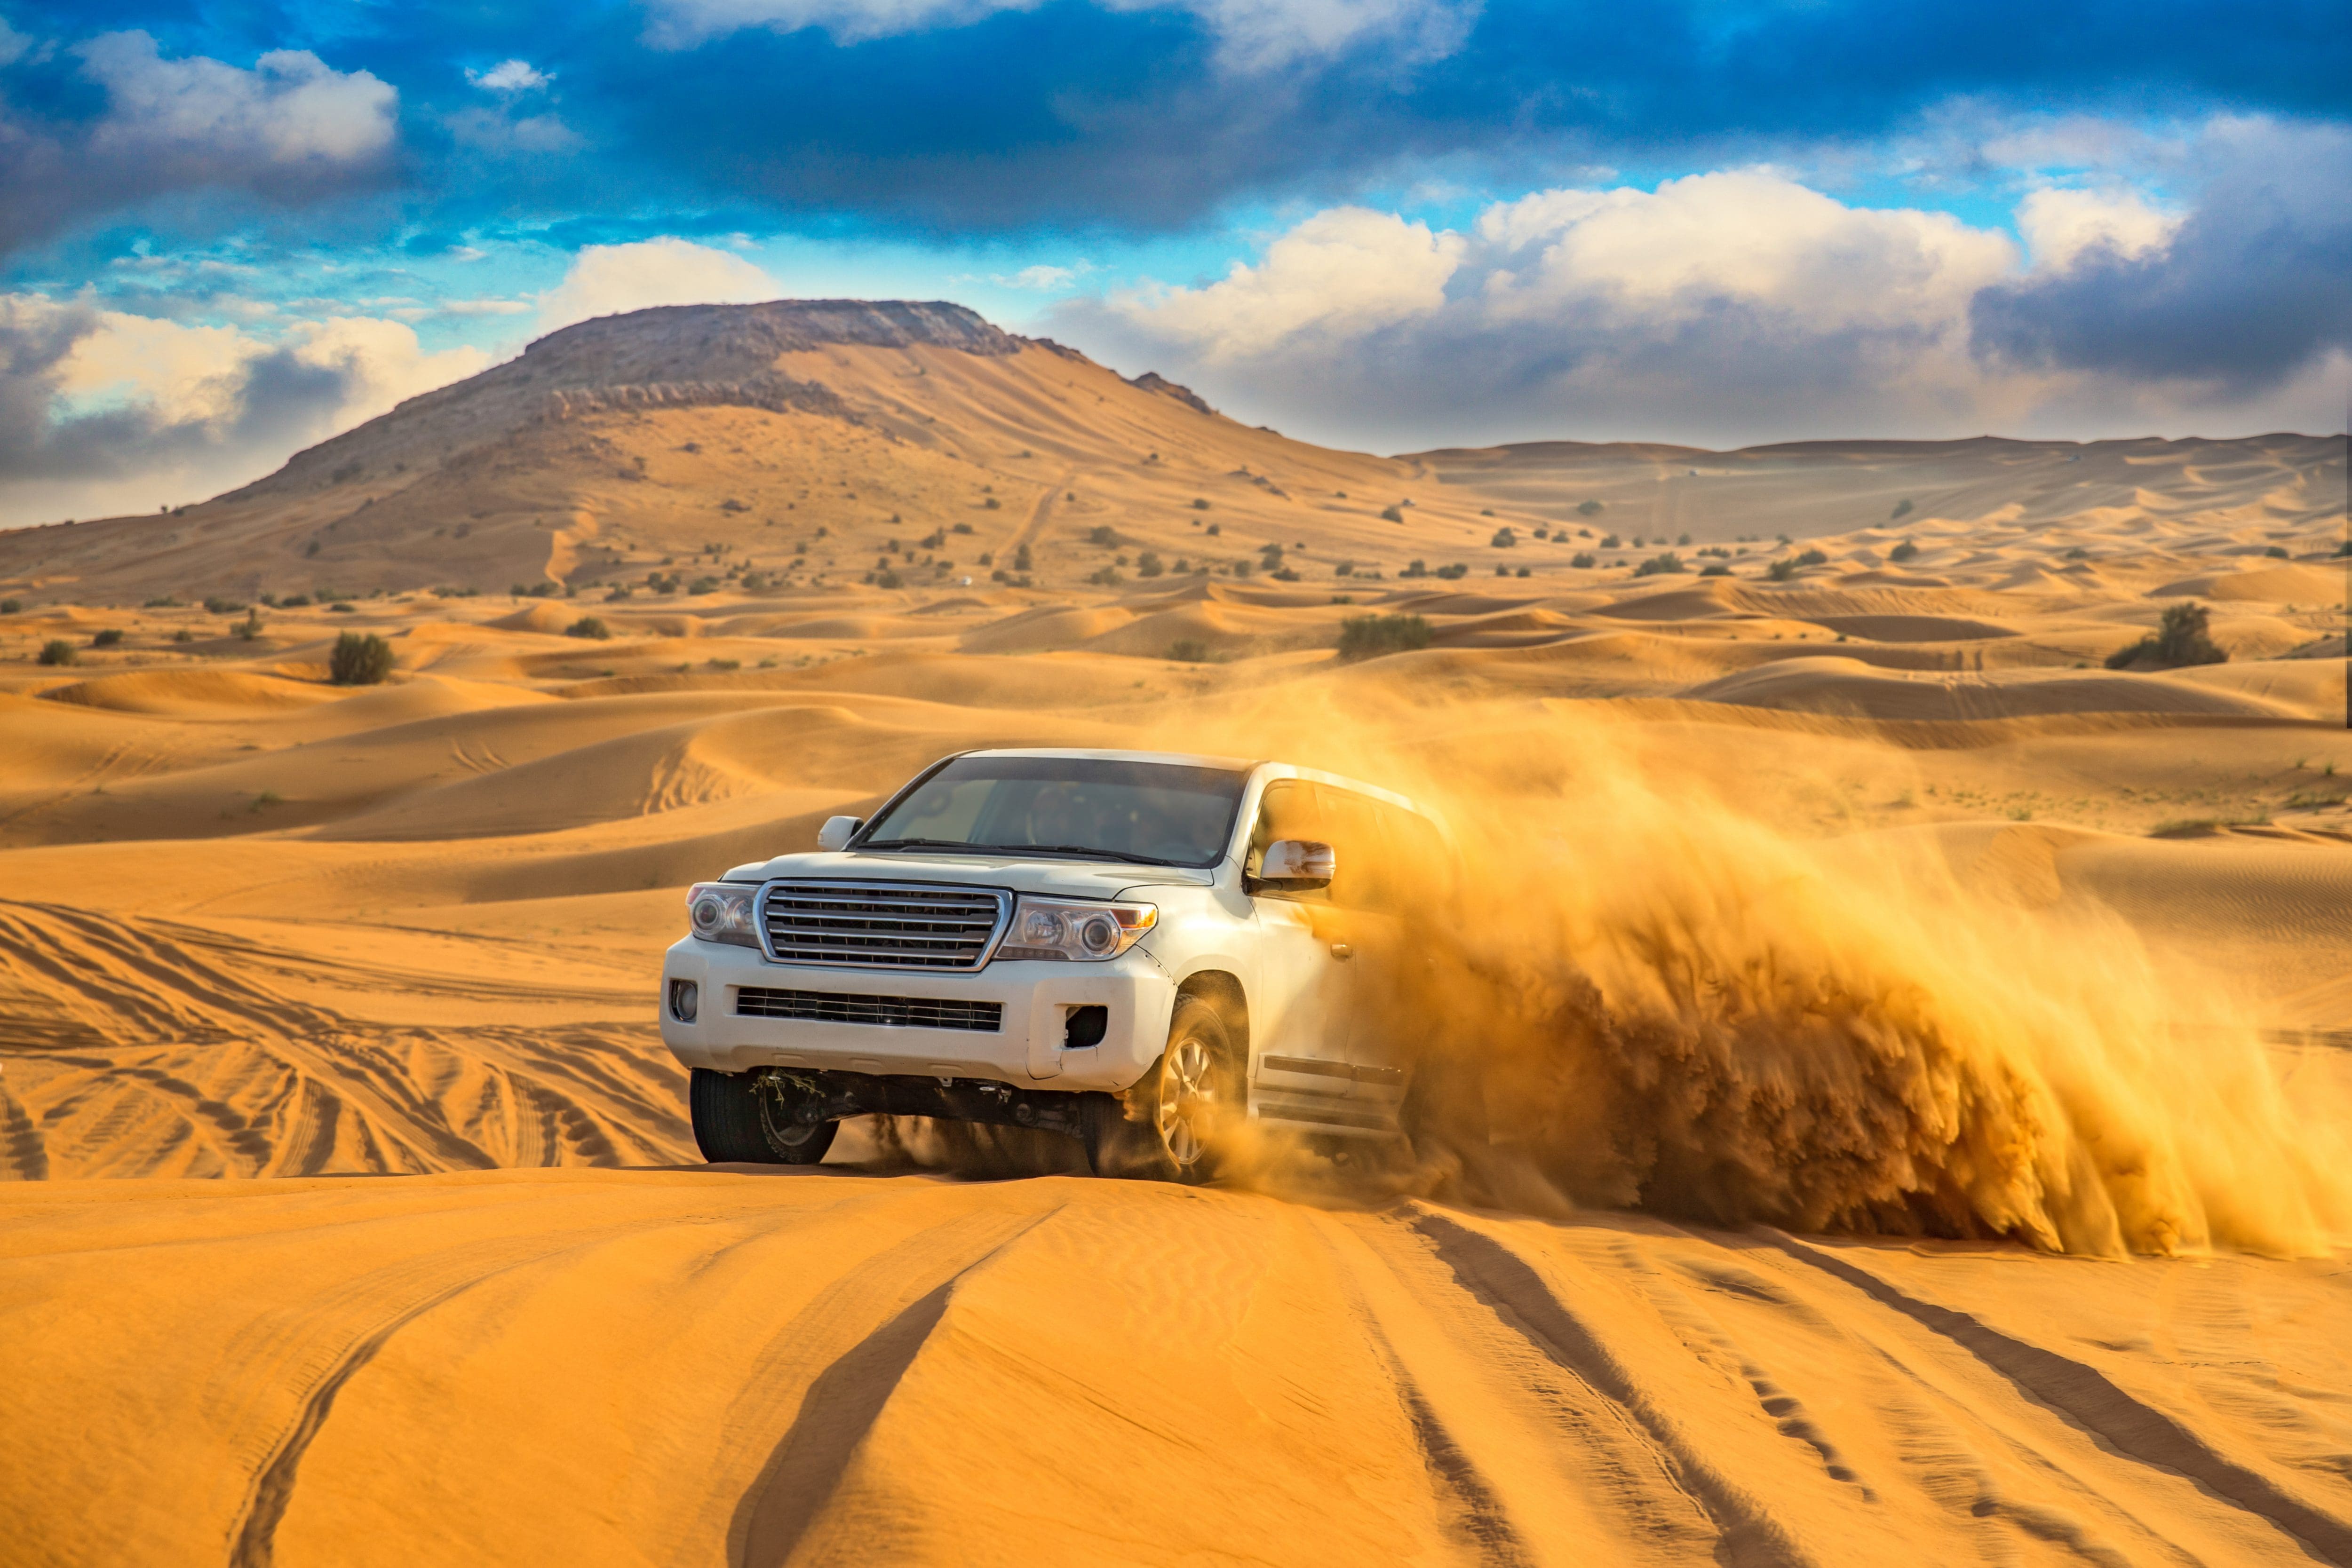 riding on desert